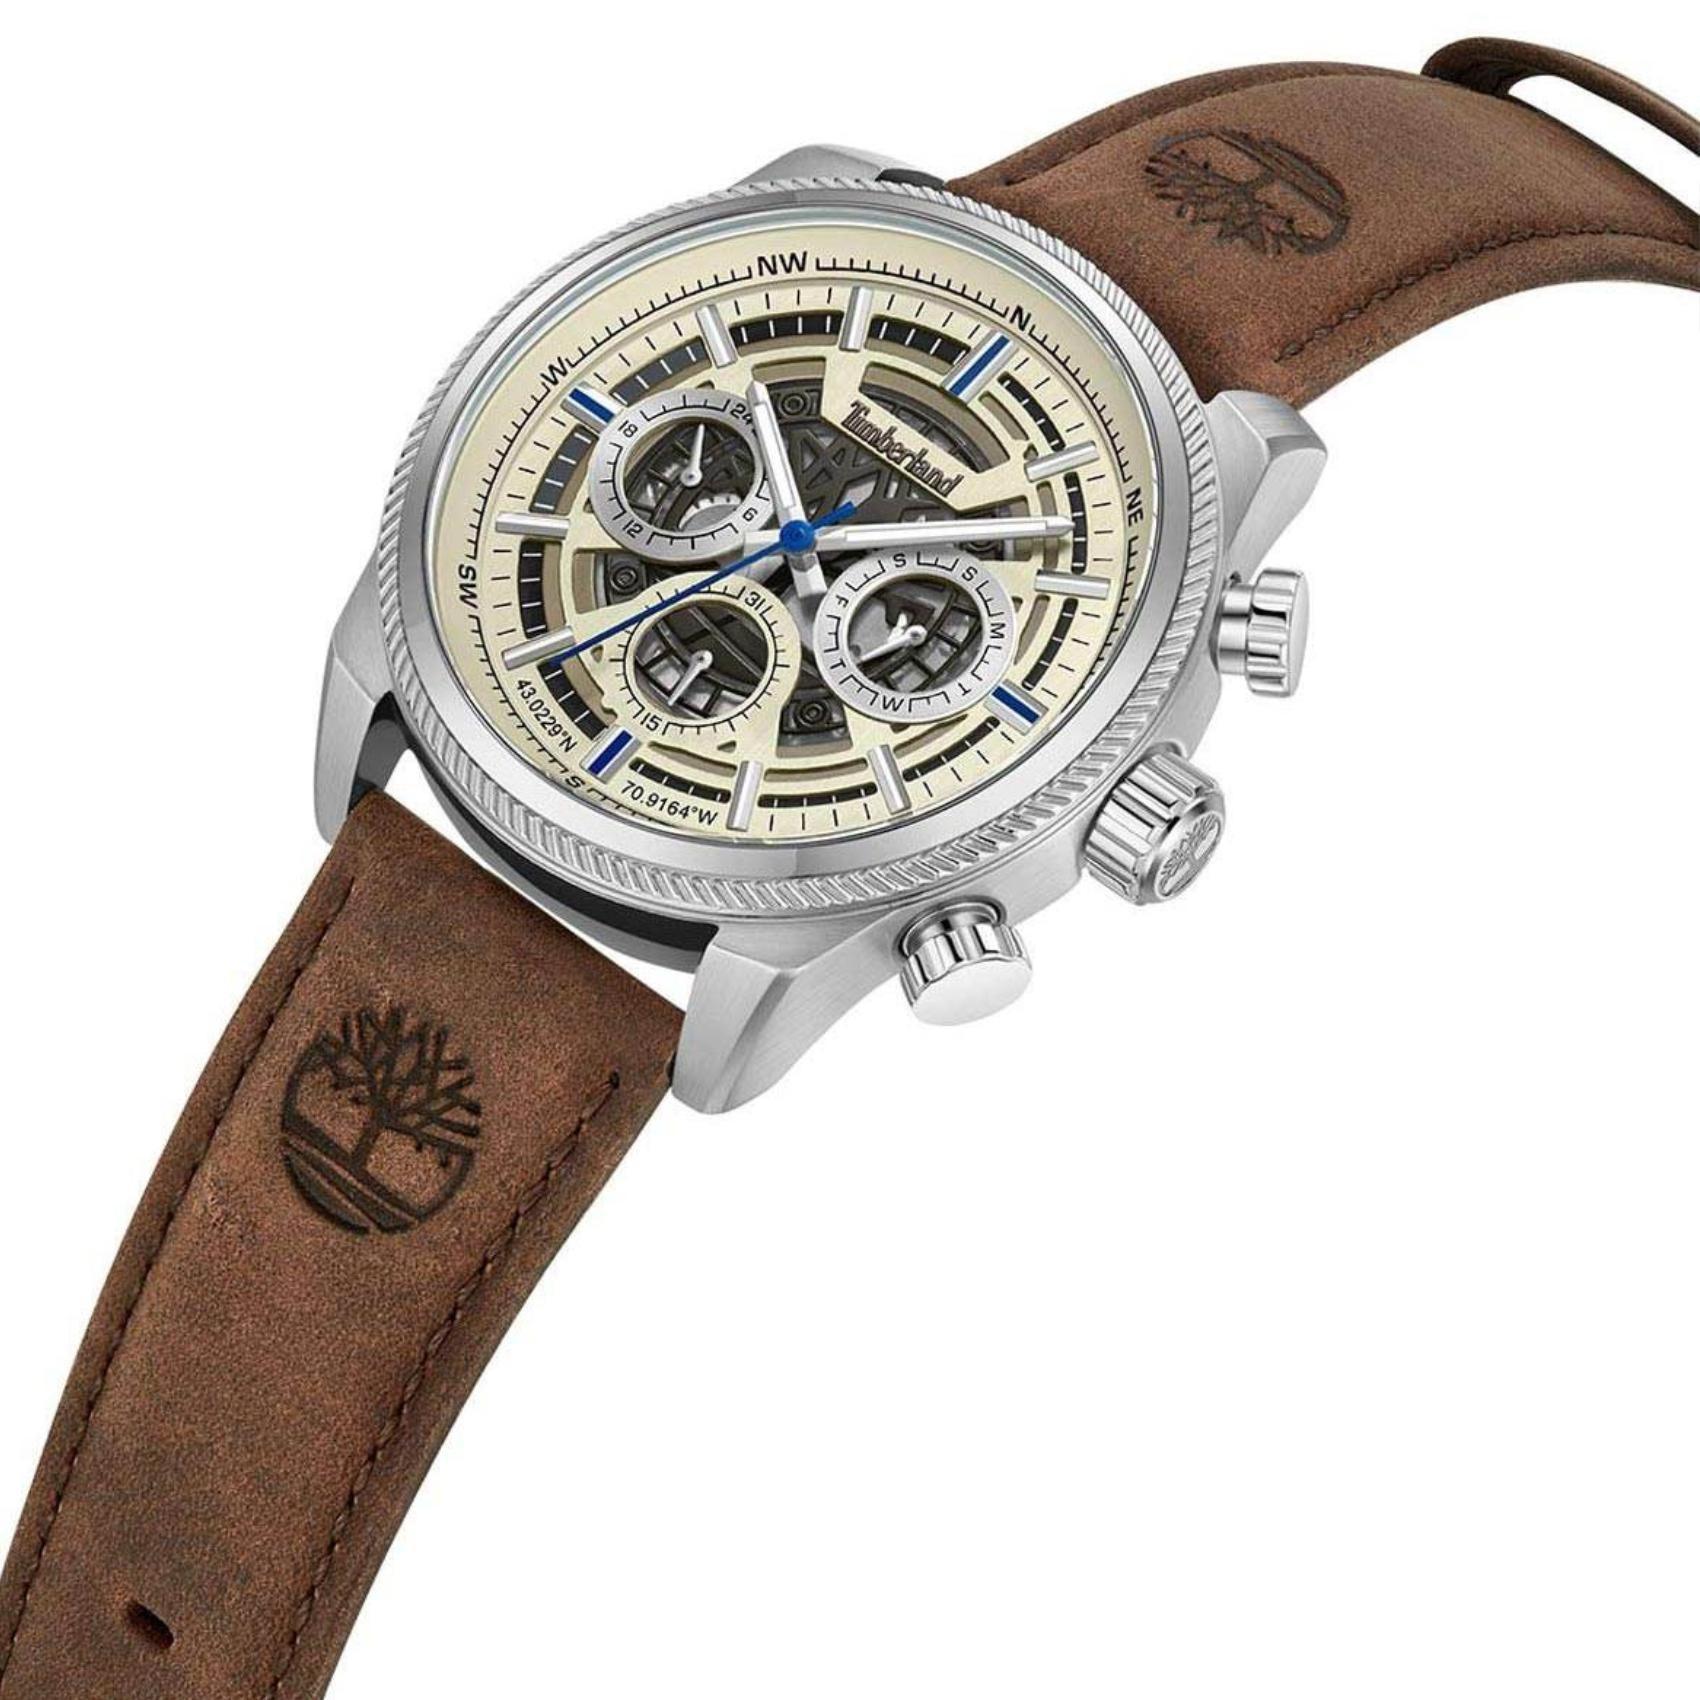 Αντρικό ρολόι Timberland Hadlock TDWGF2200705 με καφέ δερμάτινο λουράκι και μπεζ καντράν διαμέτρου 46mm με ημέρας-ημερομηνία.